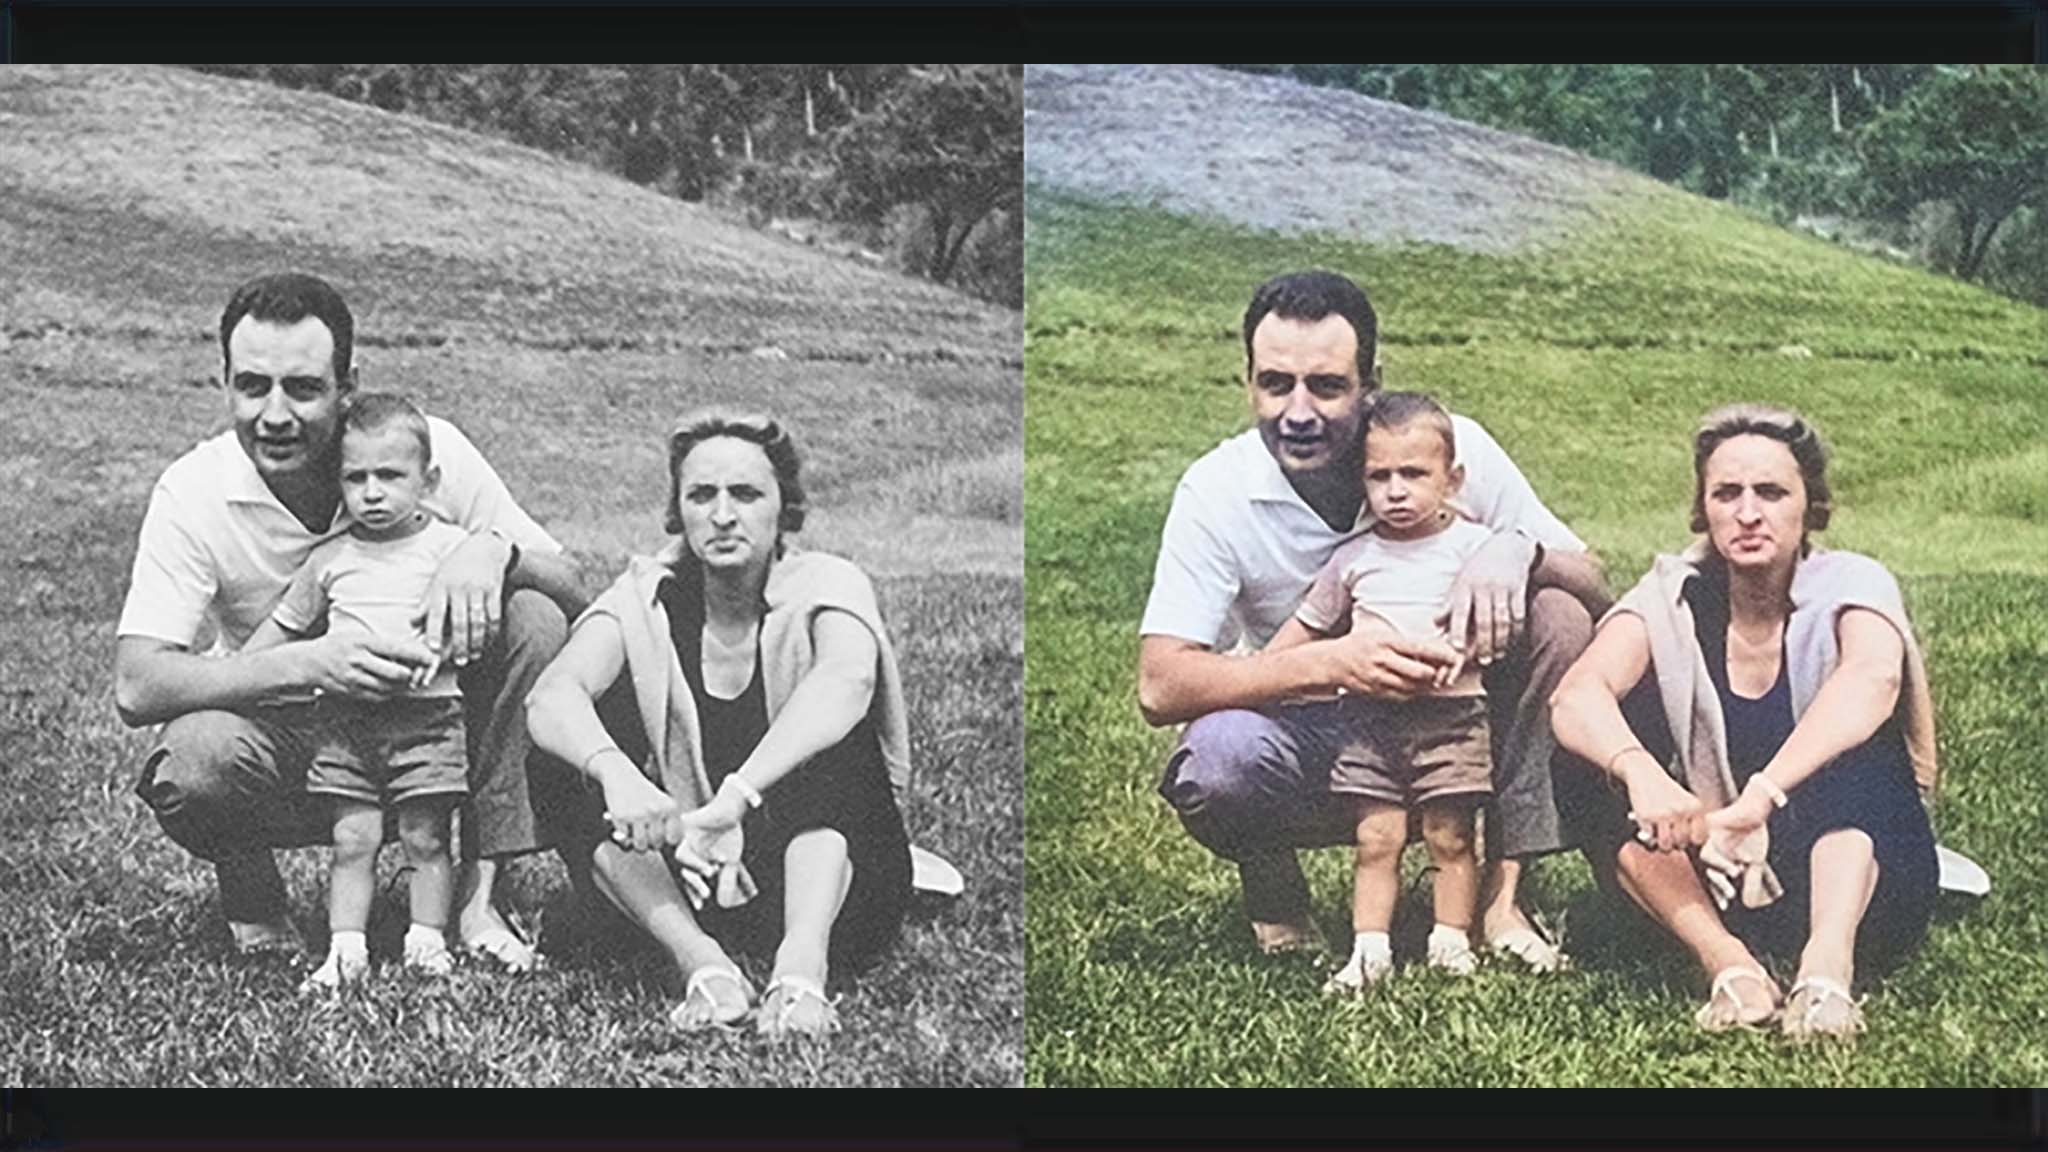 Adobe Photoshop AI araçları eski siyah beyaz aile fotoğraflarınızı renklendirmenize olanak tanır.